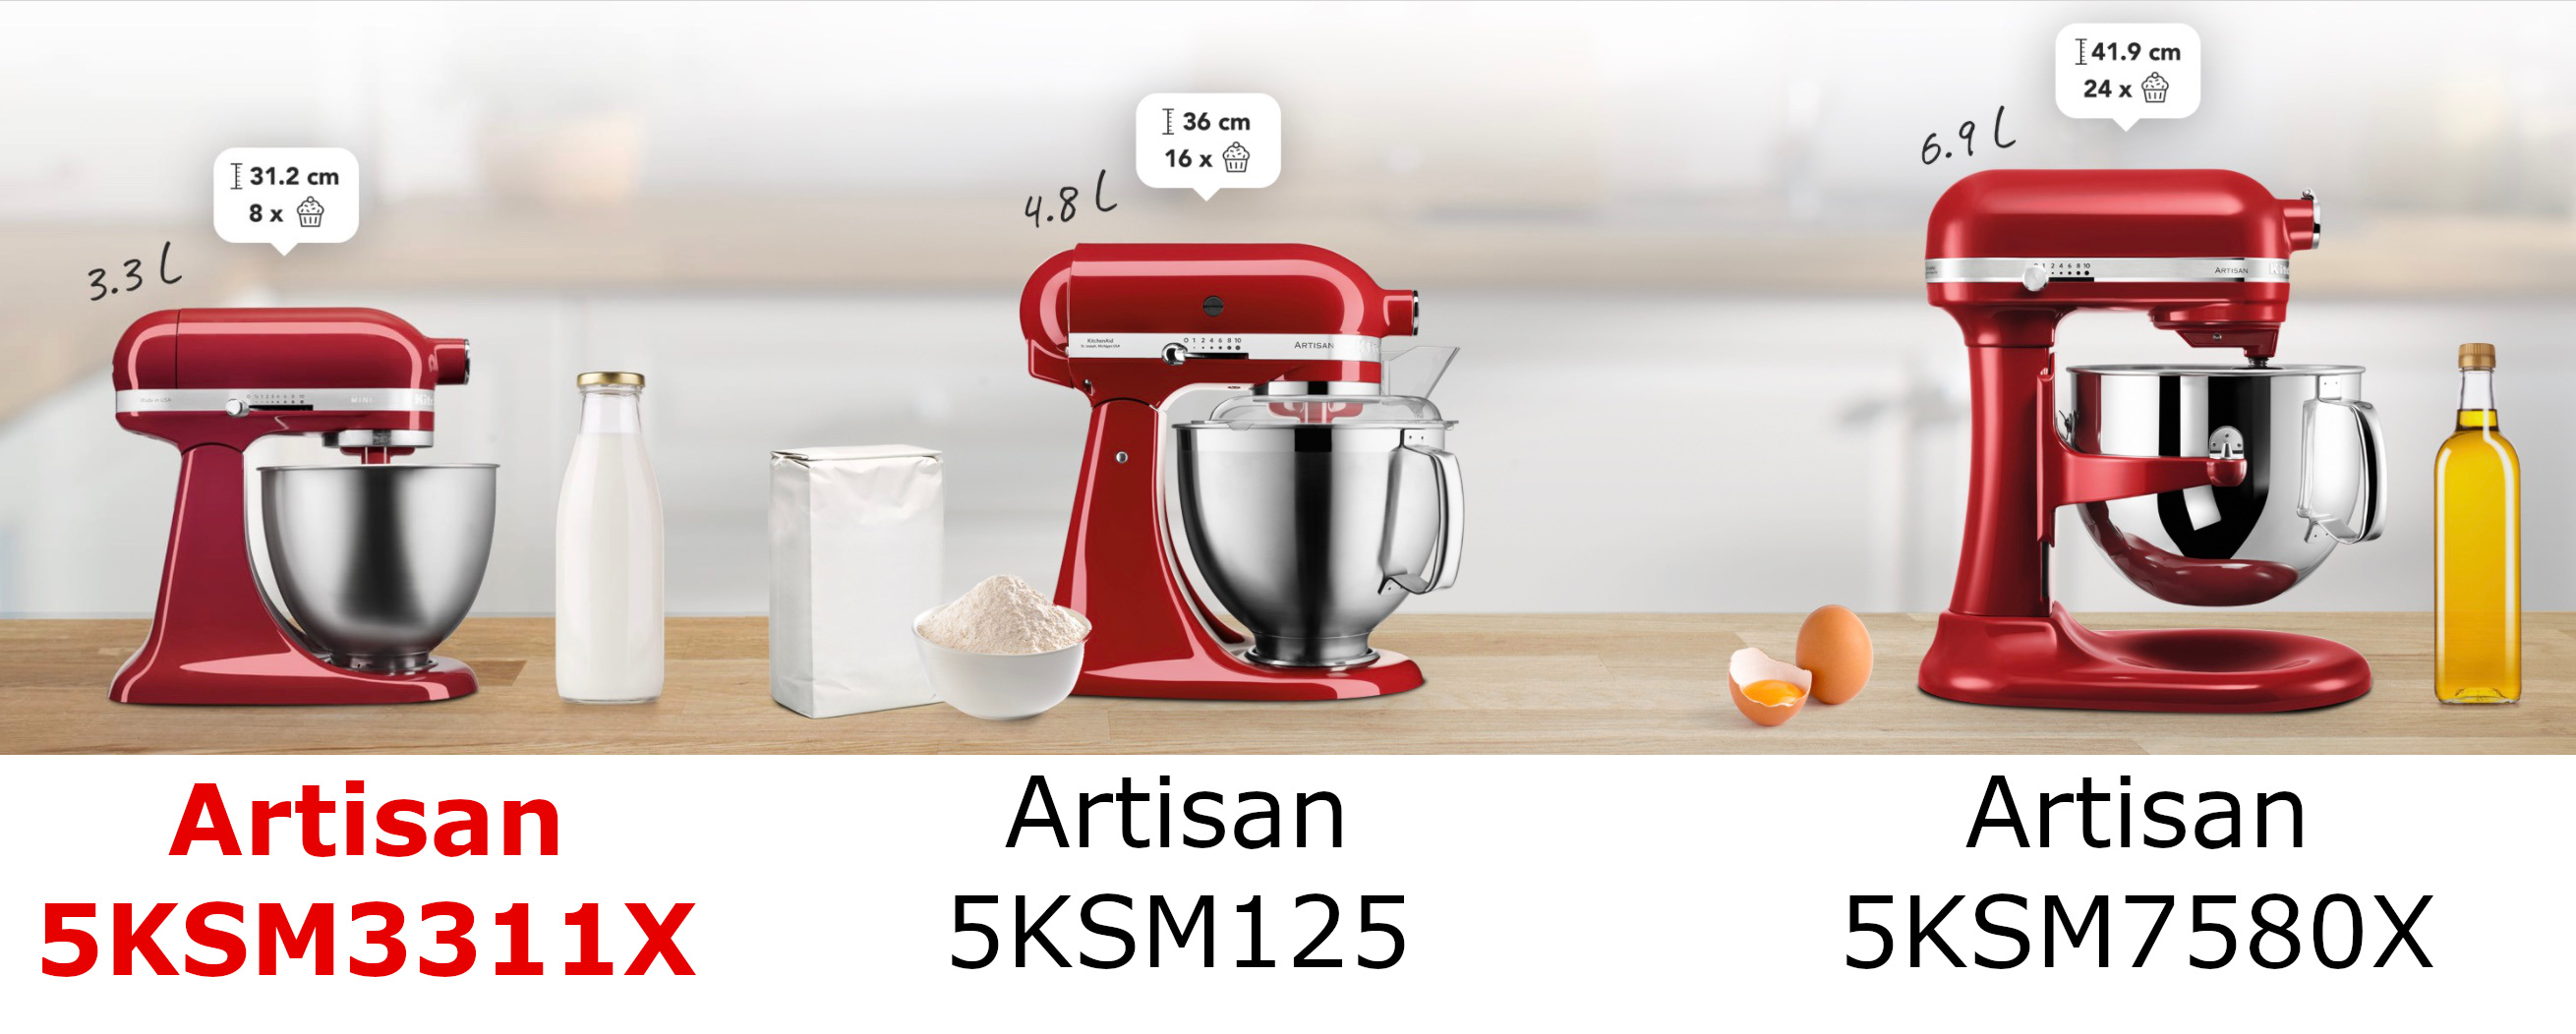 KitchenAid Artisan 5KSM3311X comparé avec les autres modèles